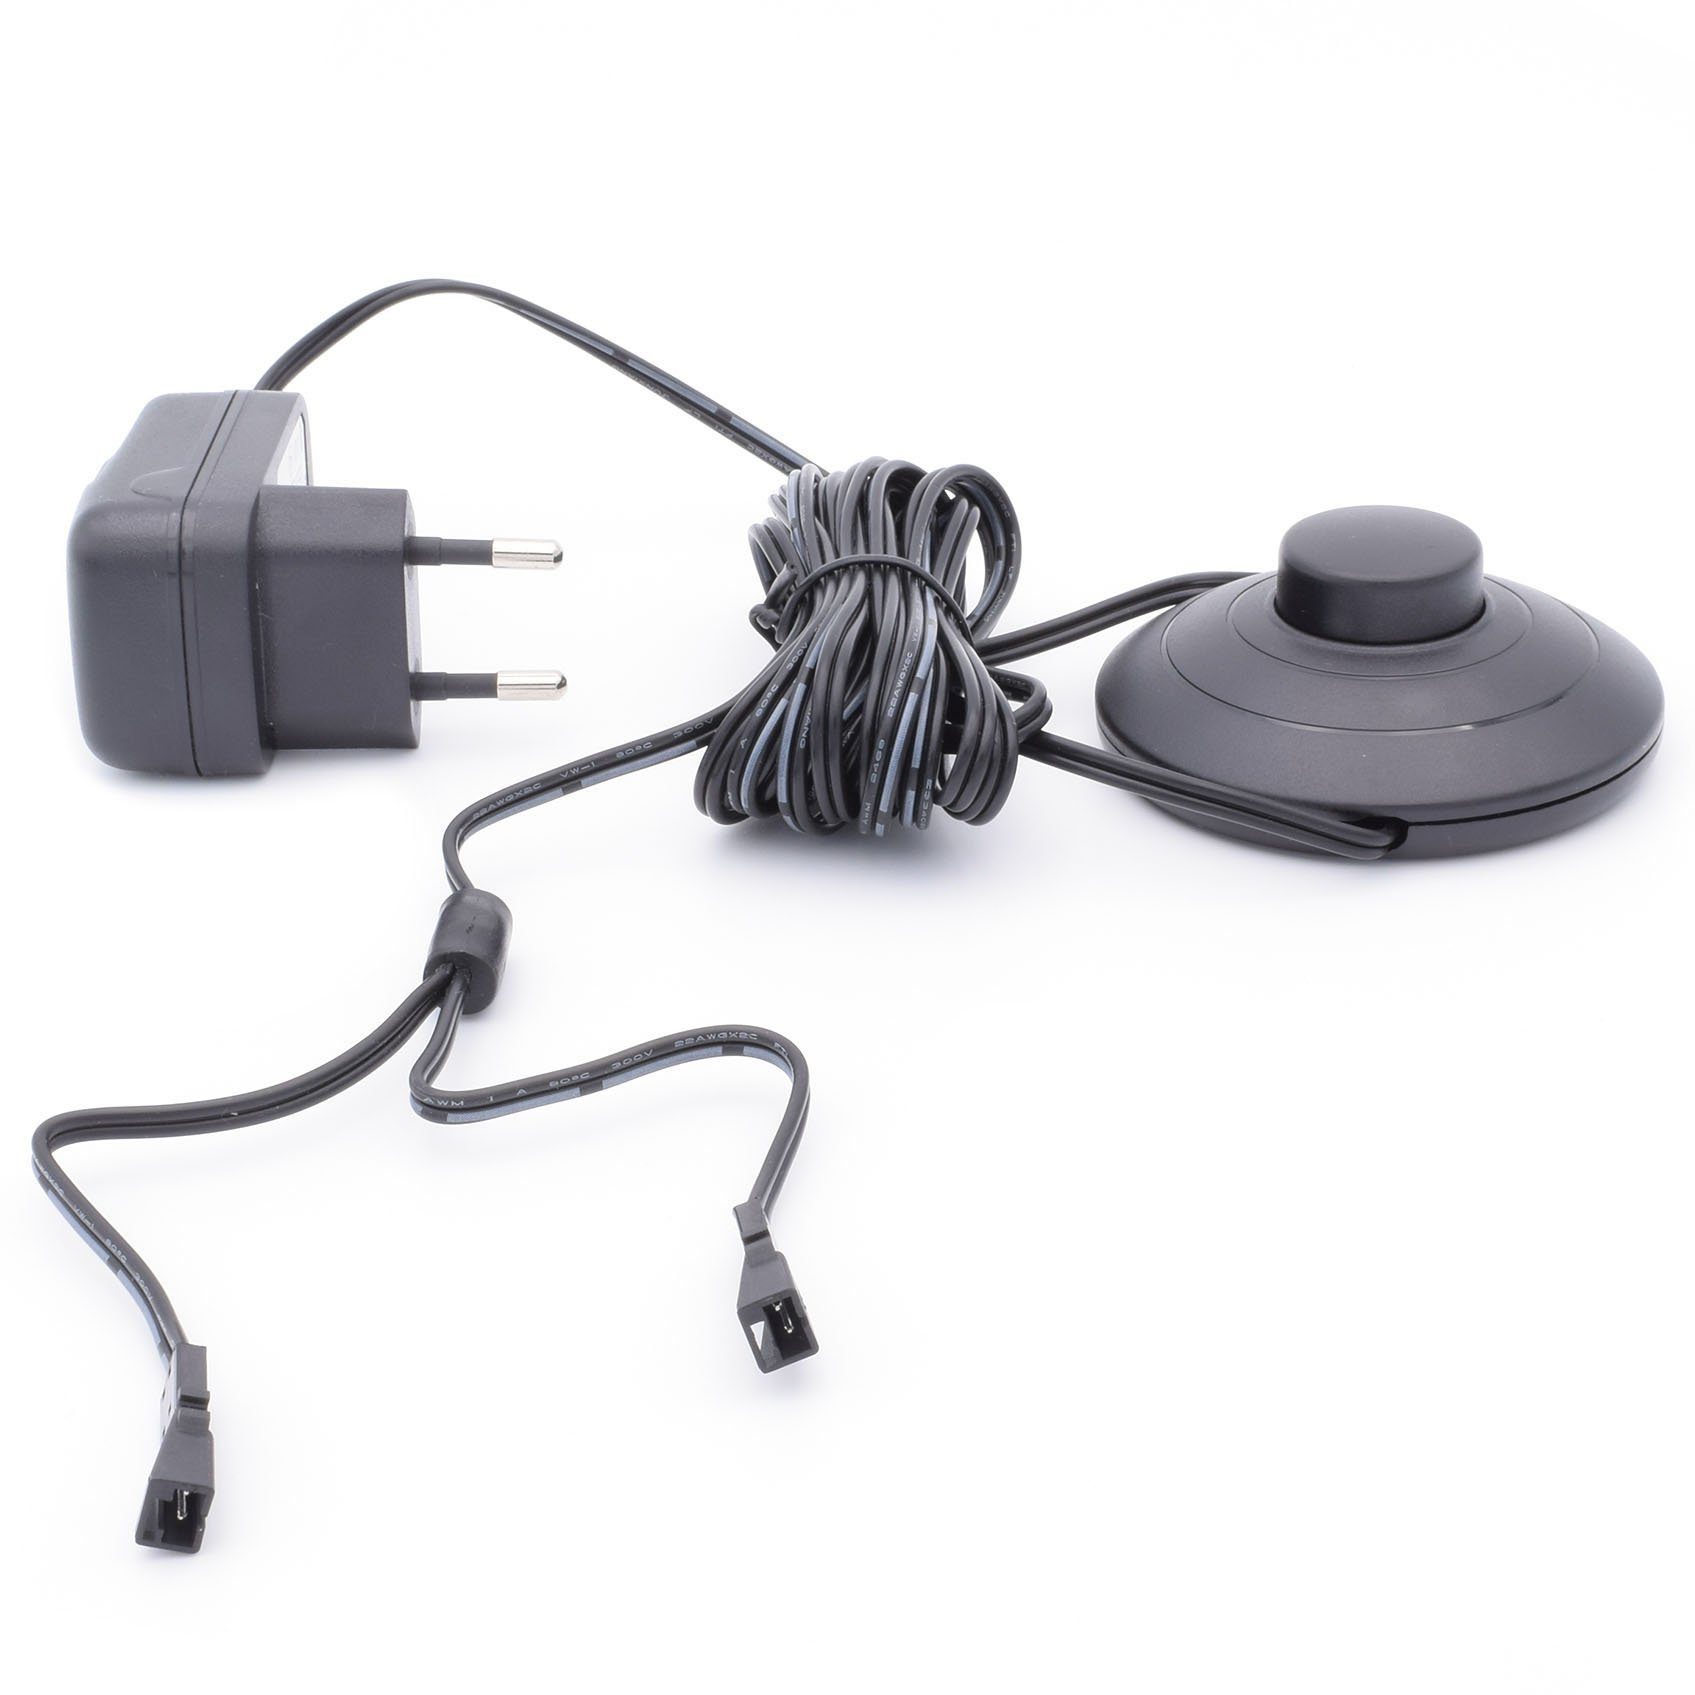 Yu mit 6W Steckernetzteil (12V,6W,Trafo,SteckernetzteilmitFußschalter,2LEDKupplungen,Netzteil) Fußschalter Yang LED Trafo